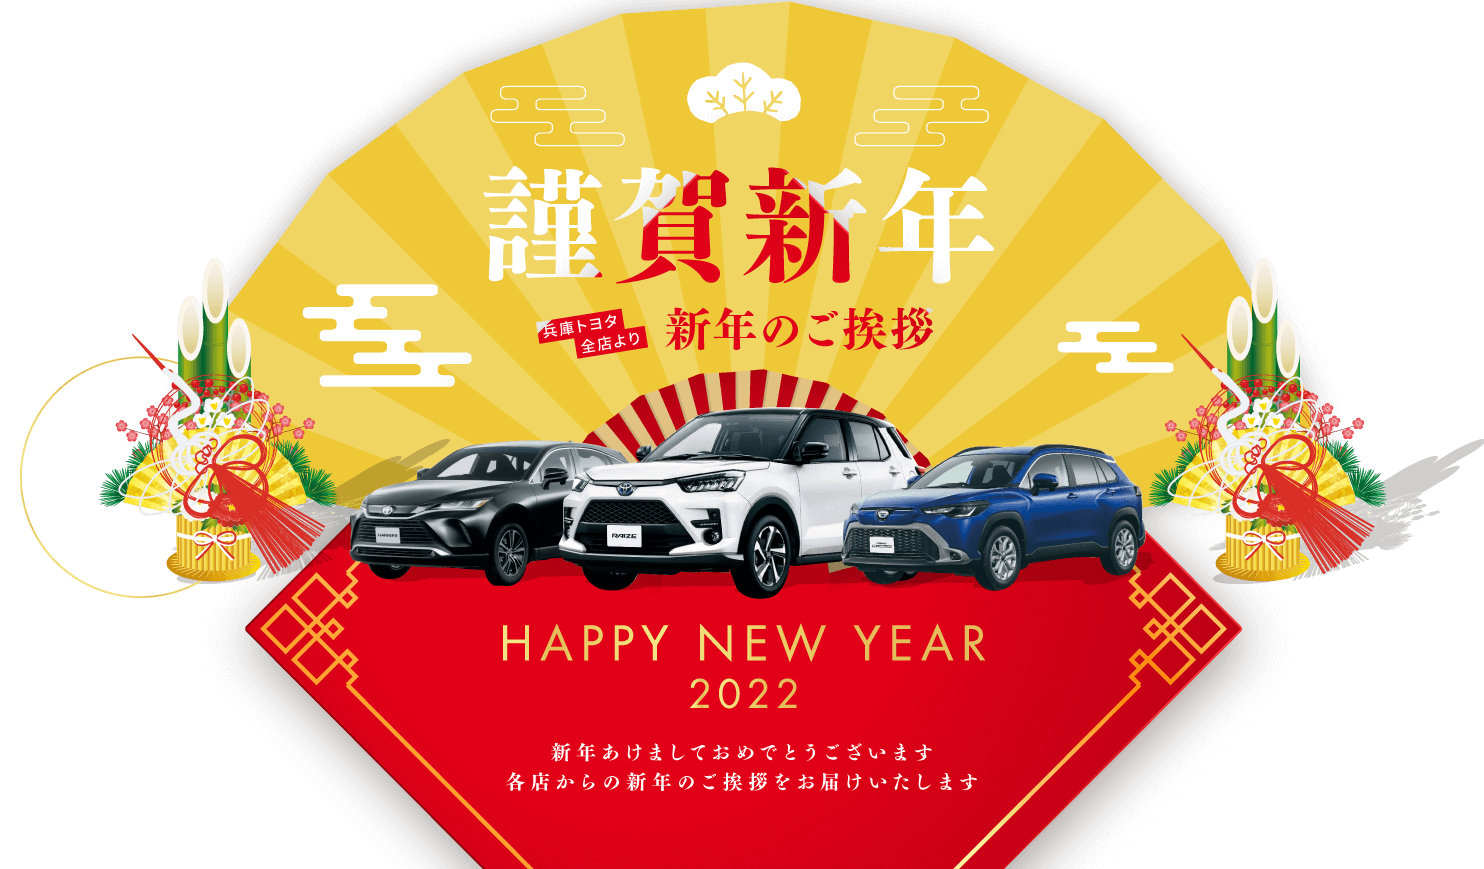 HAPPY NEW YEAR 2022 新年あけましておめでとうございます。各店からの新年のご挨拶をお届けいたします